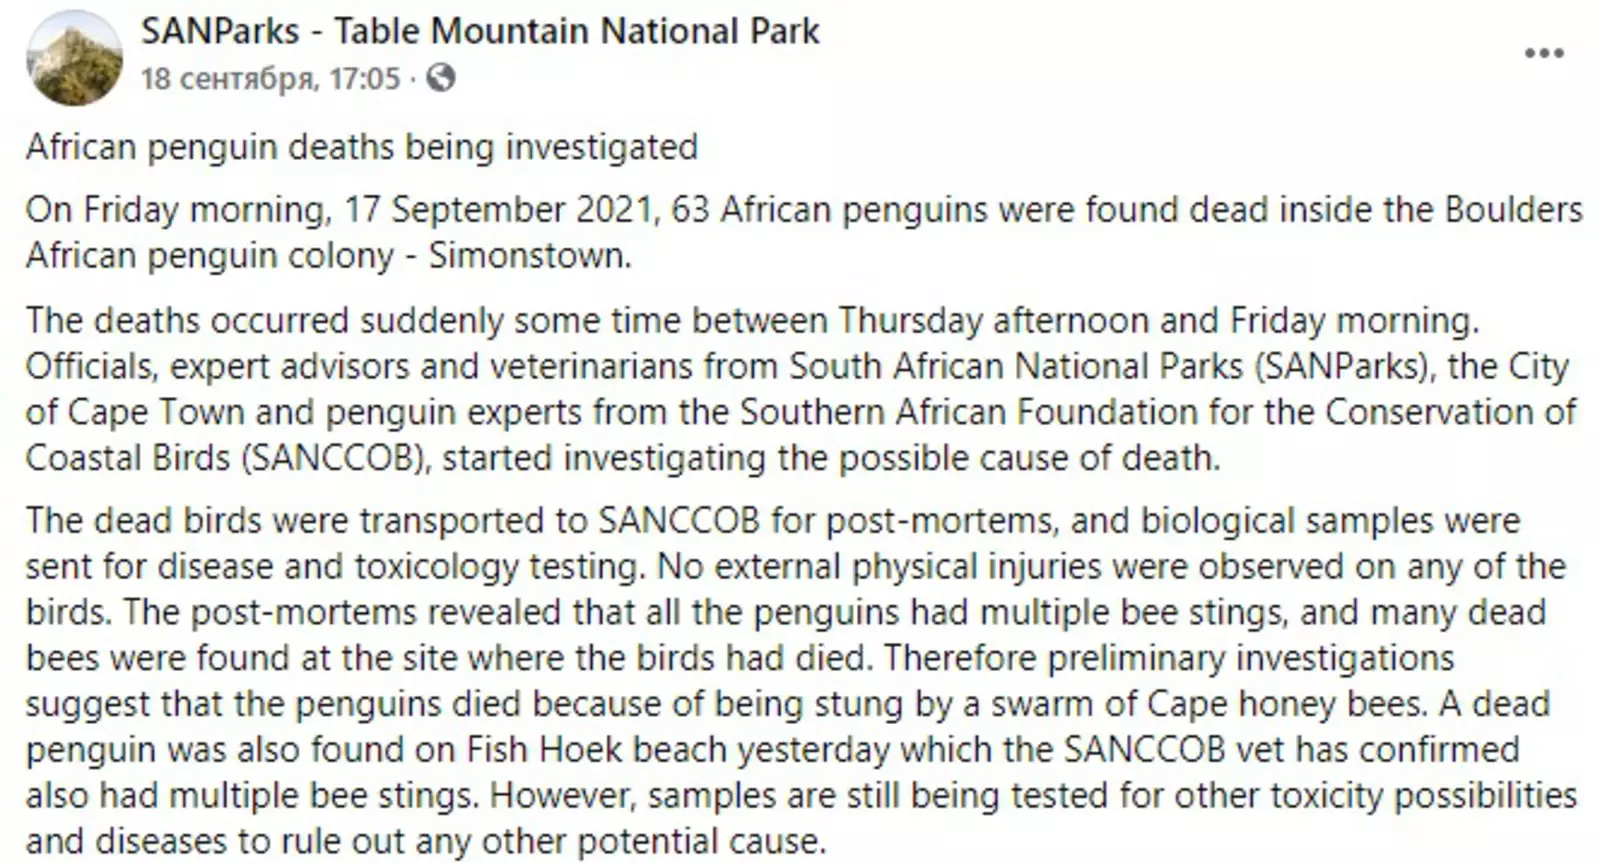 Мертвый пингвин, найденный вчера на пляже Фиш-Хук, тоже получил множество пчелиных укусов. Тем не менее, проводится дальнейшая экспертиза на предмет обнаружения возможных токсичных веществ или заболеваний у животных.